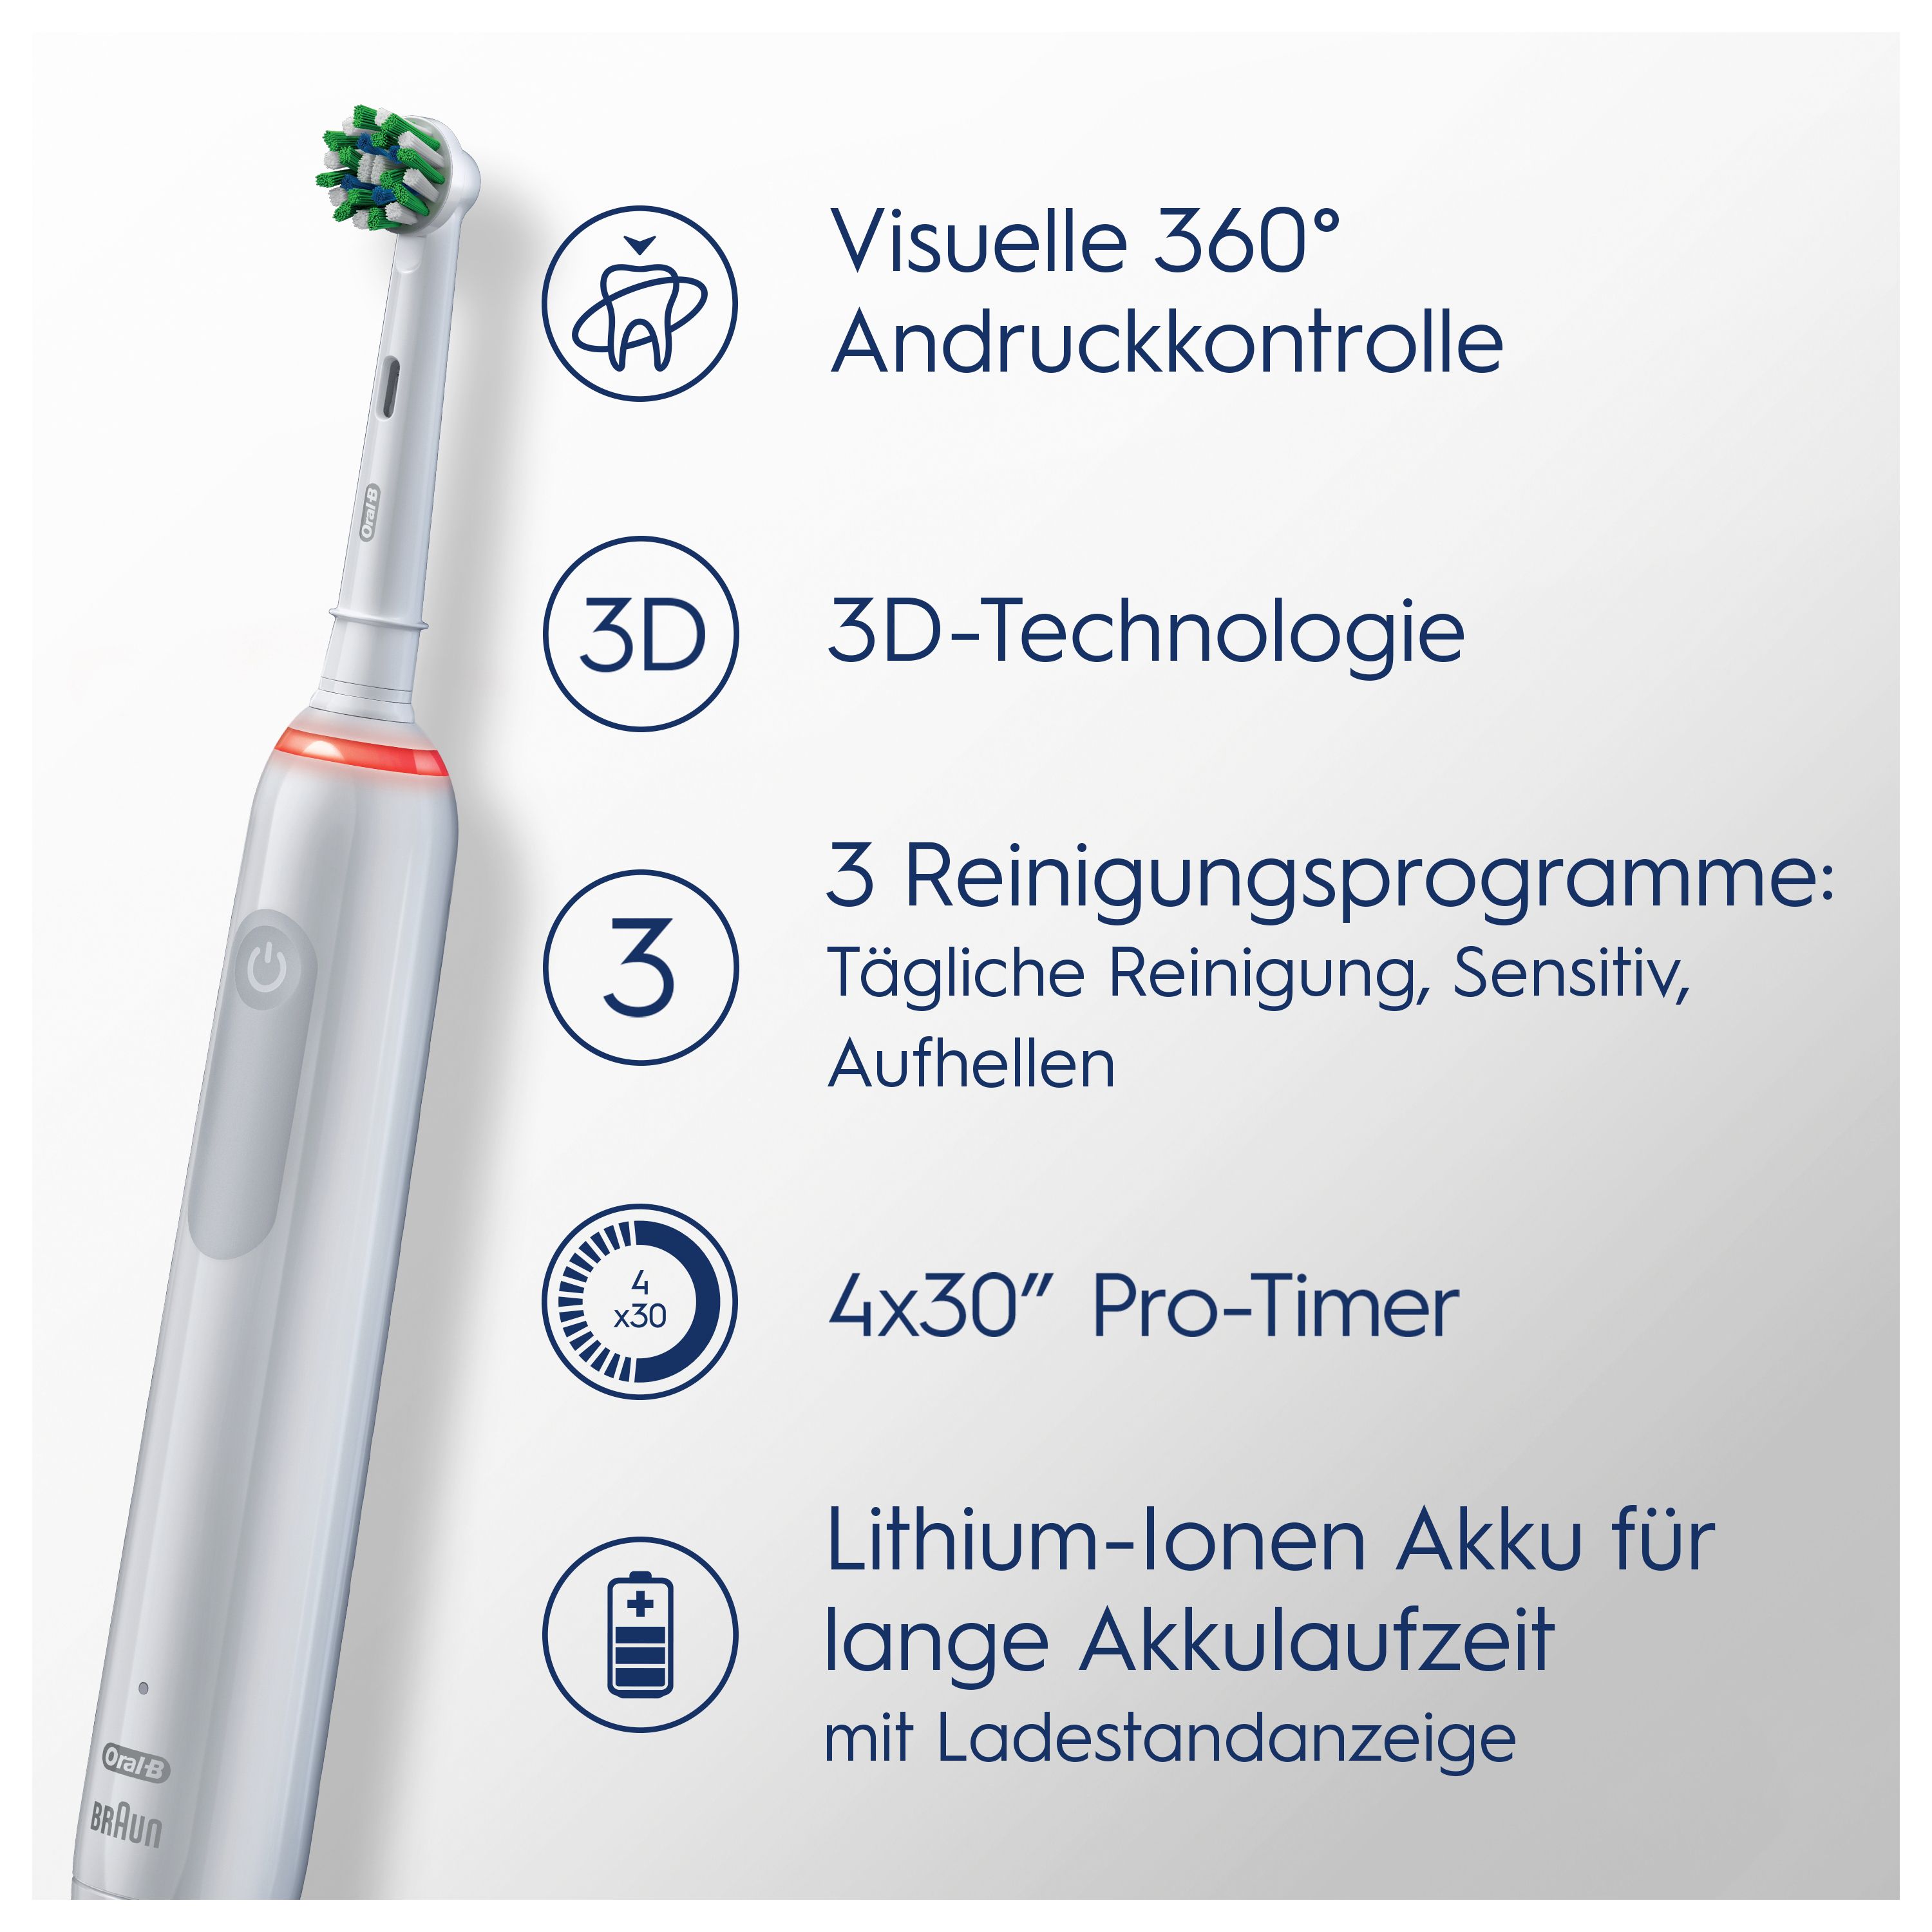 Oral-B - Elektrische Zahnbürste "Pro 3 - Sensitive Clean" in Weiß